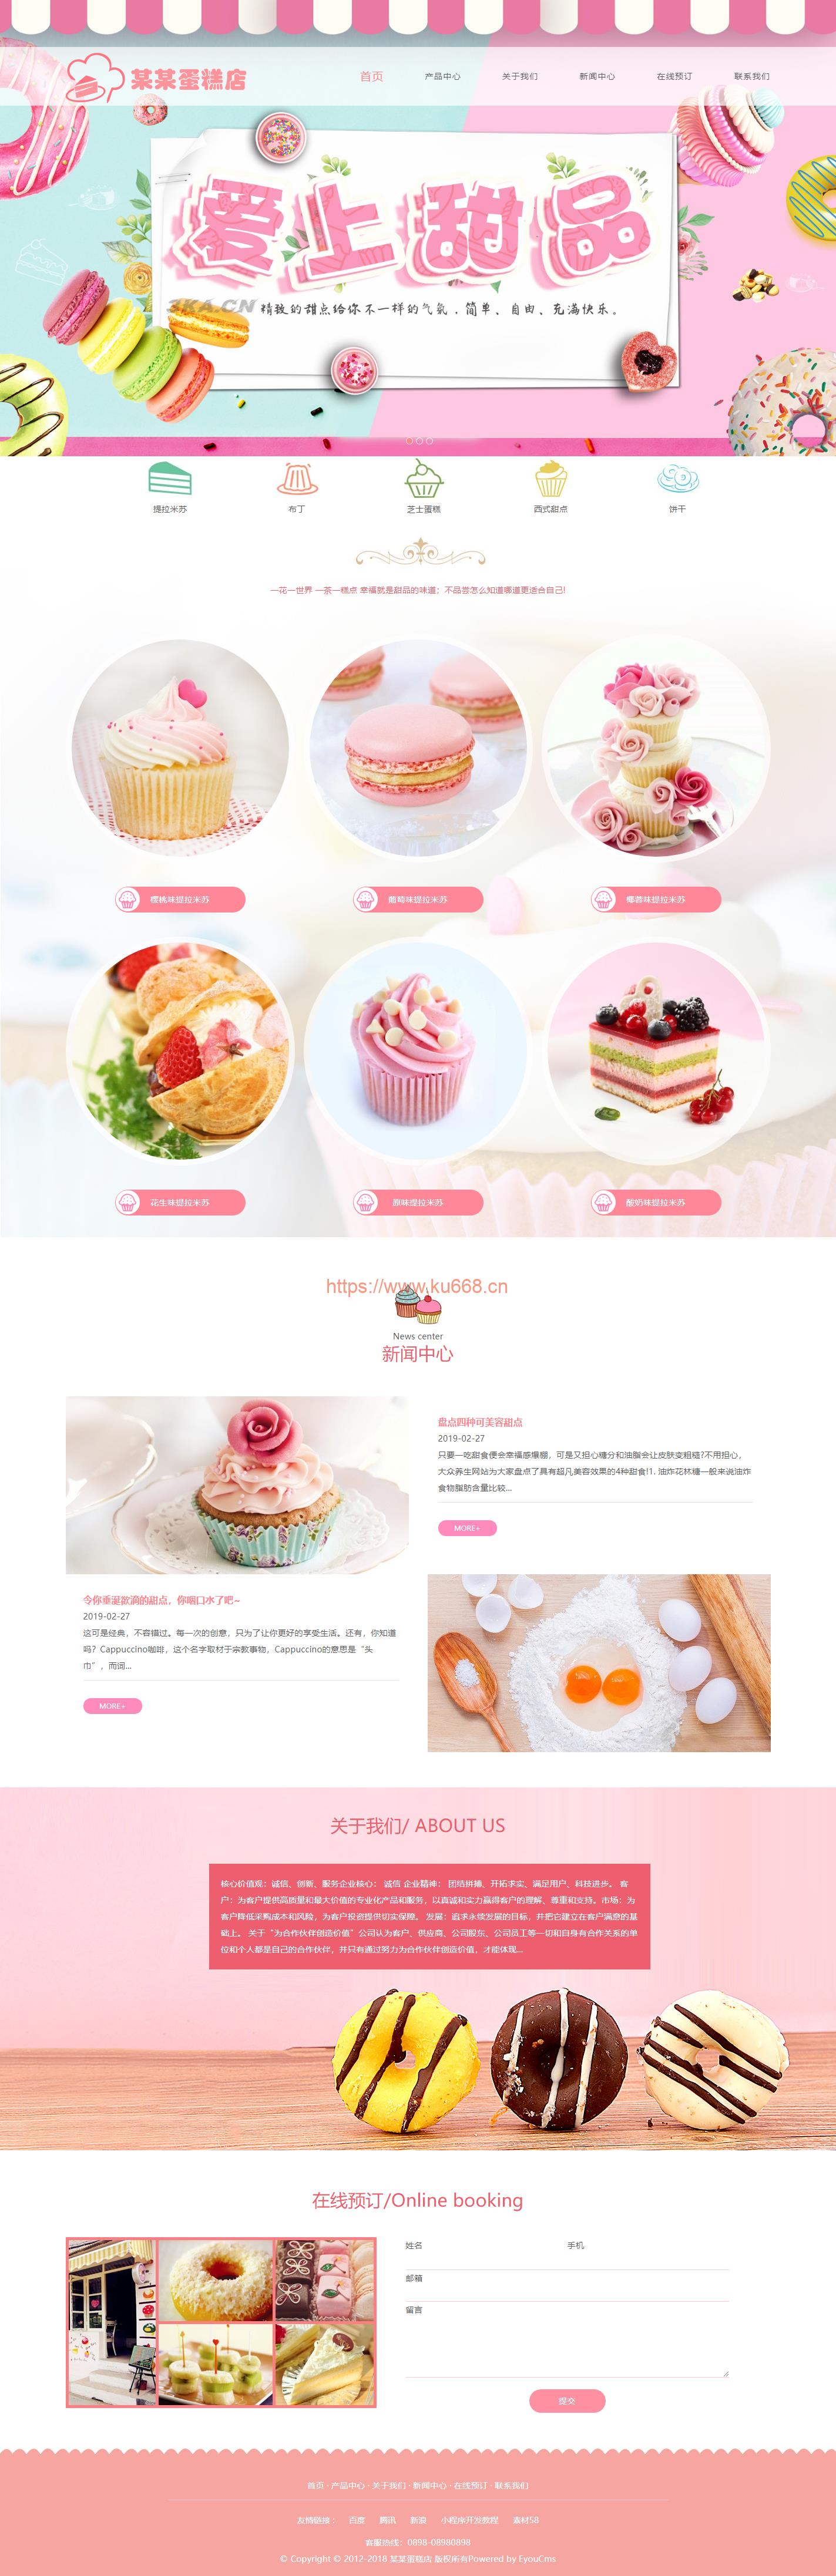 PHP美食甜点蛋糕店网站模板源码 带手机端+后台